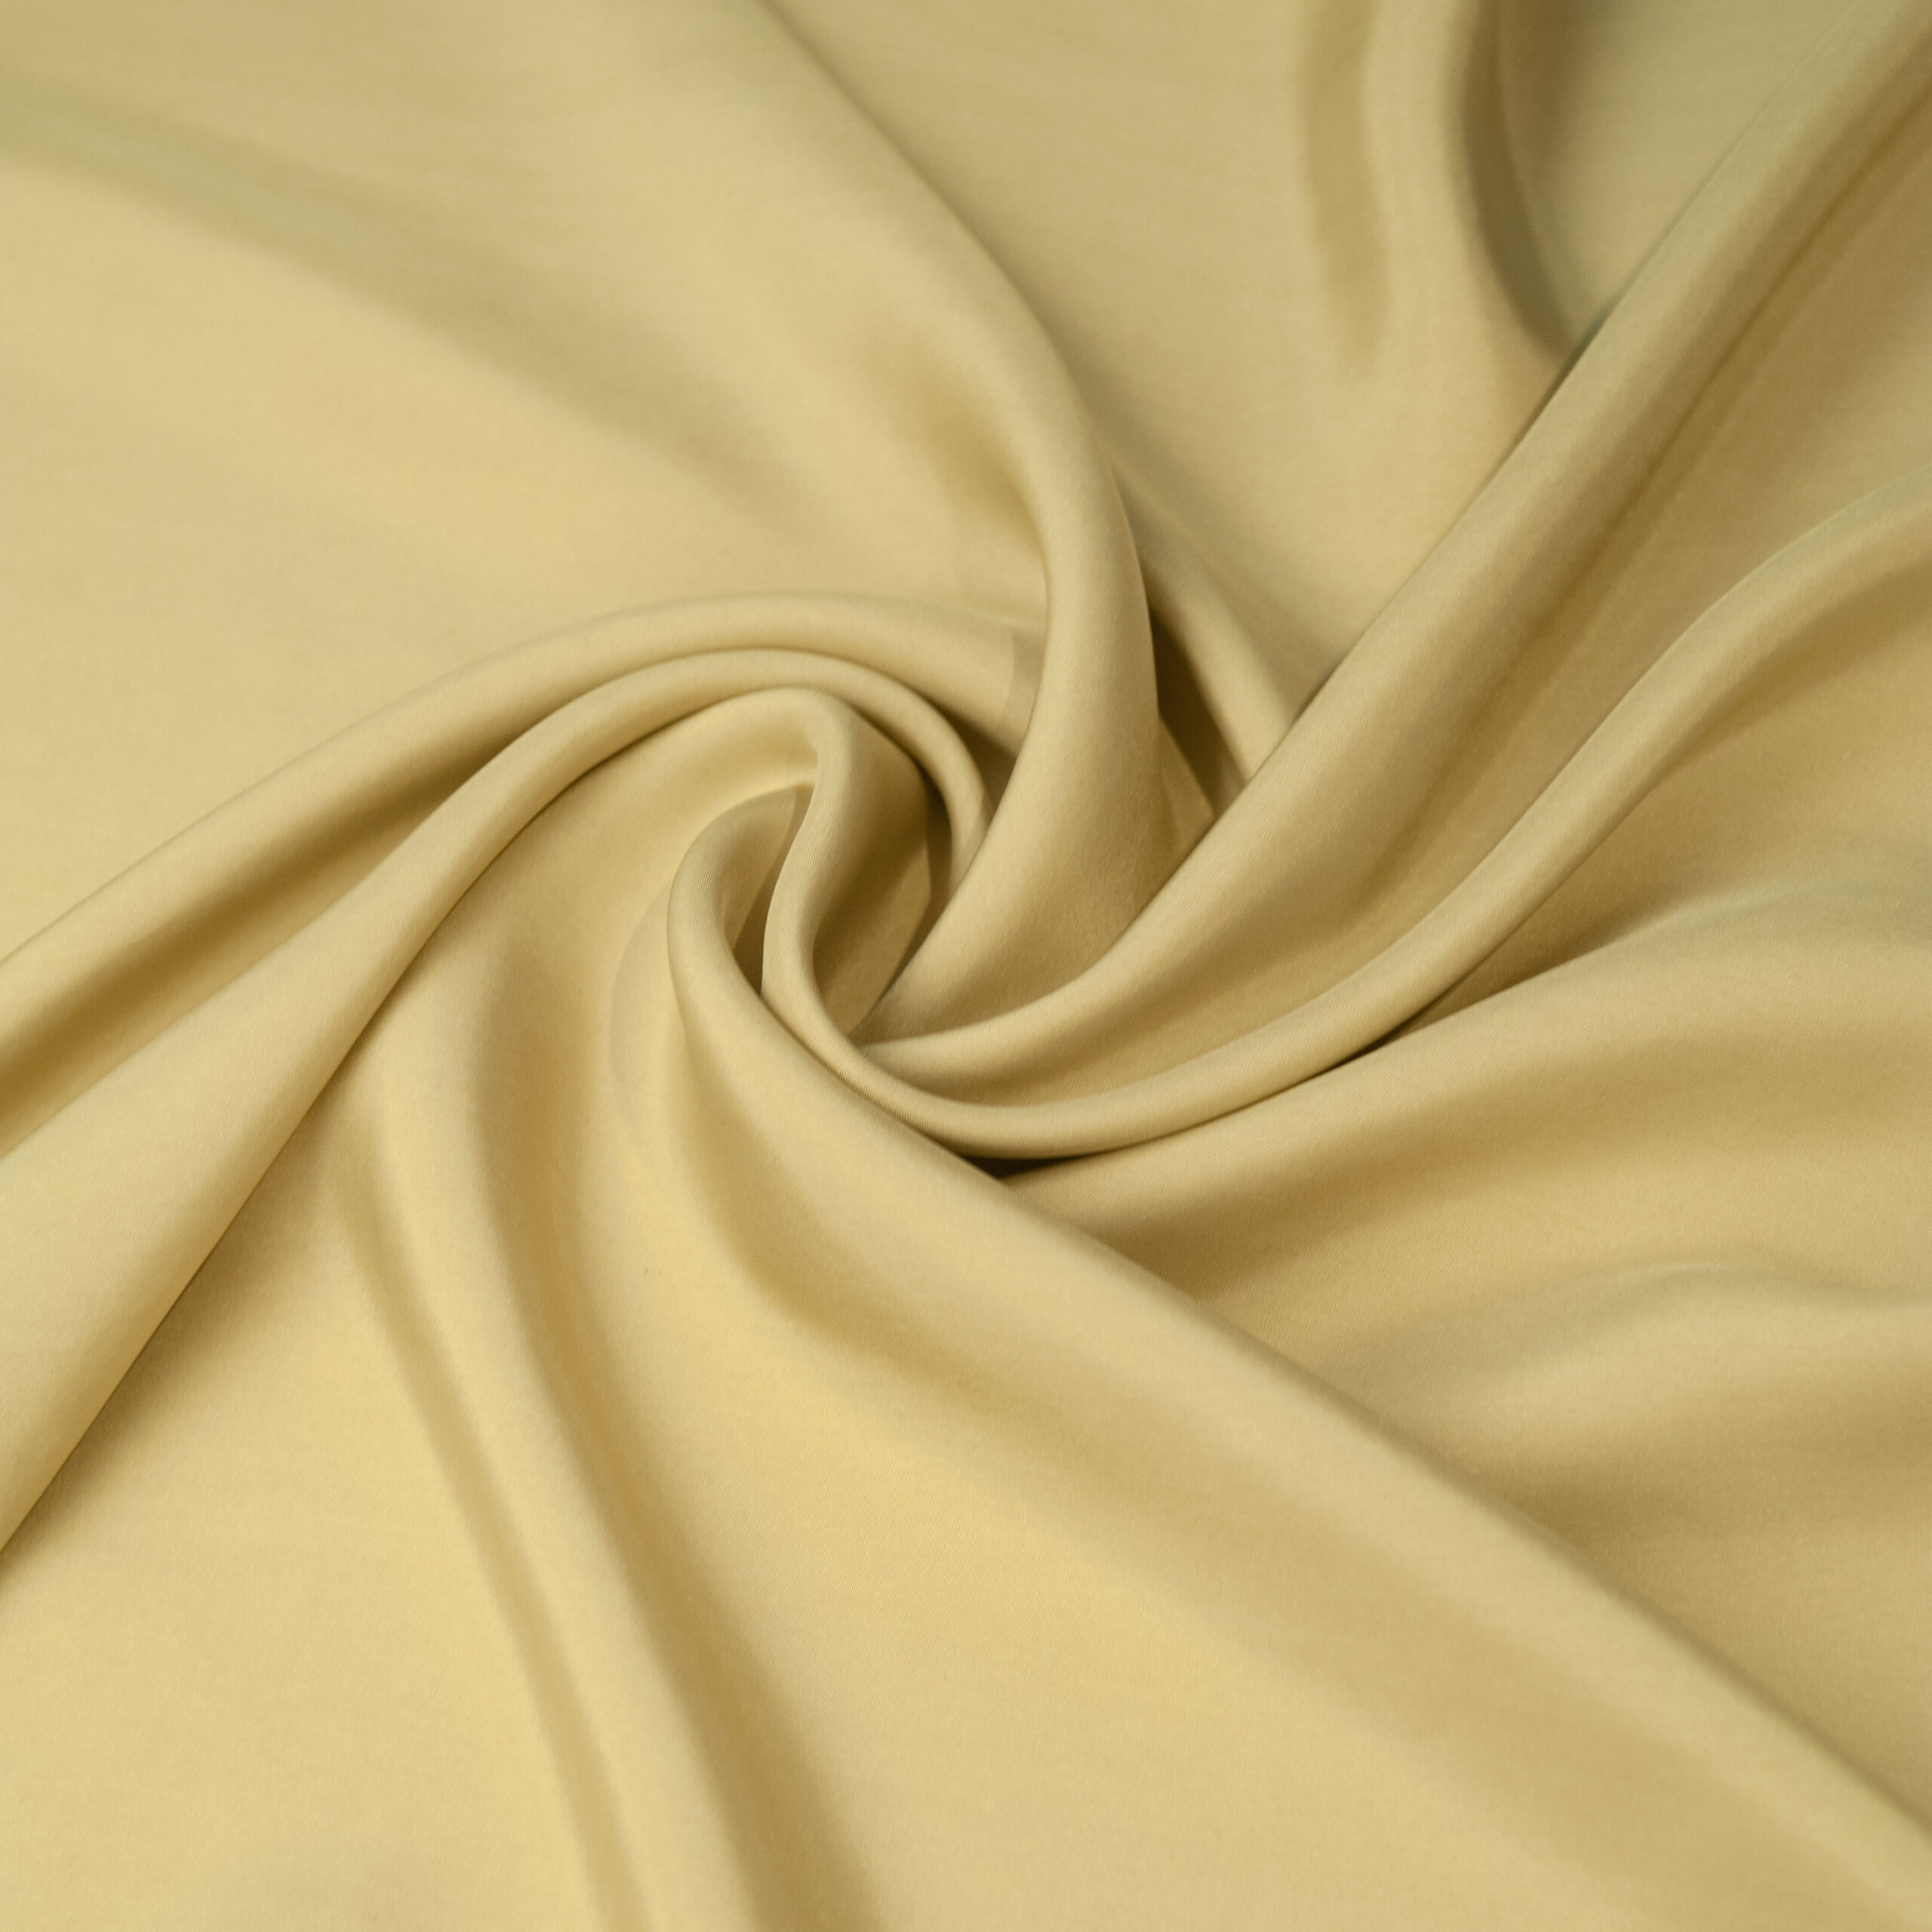 yellow fabric